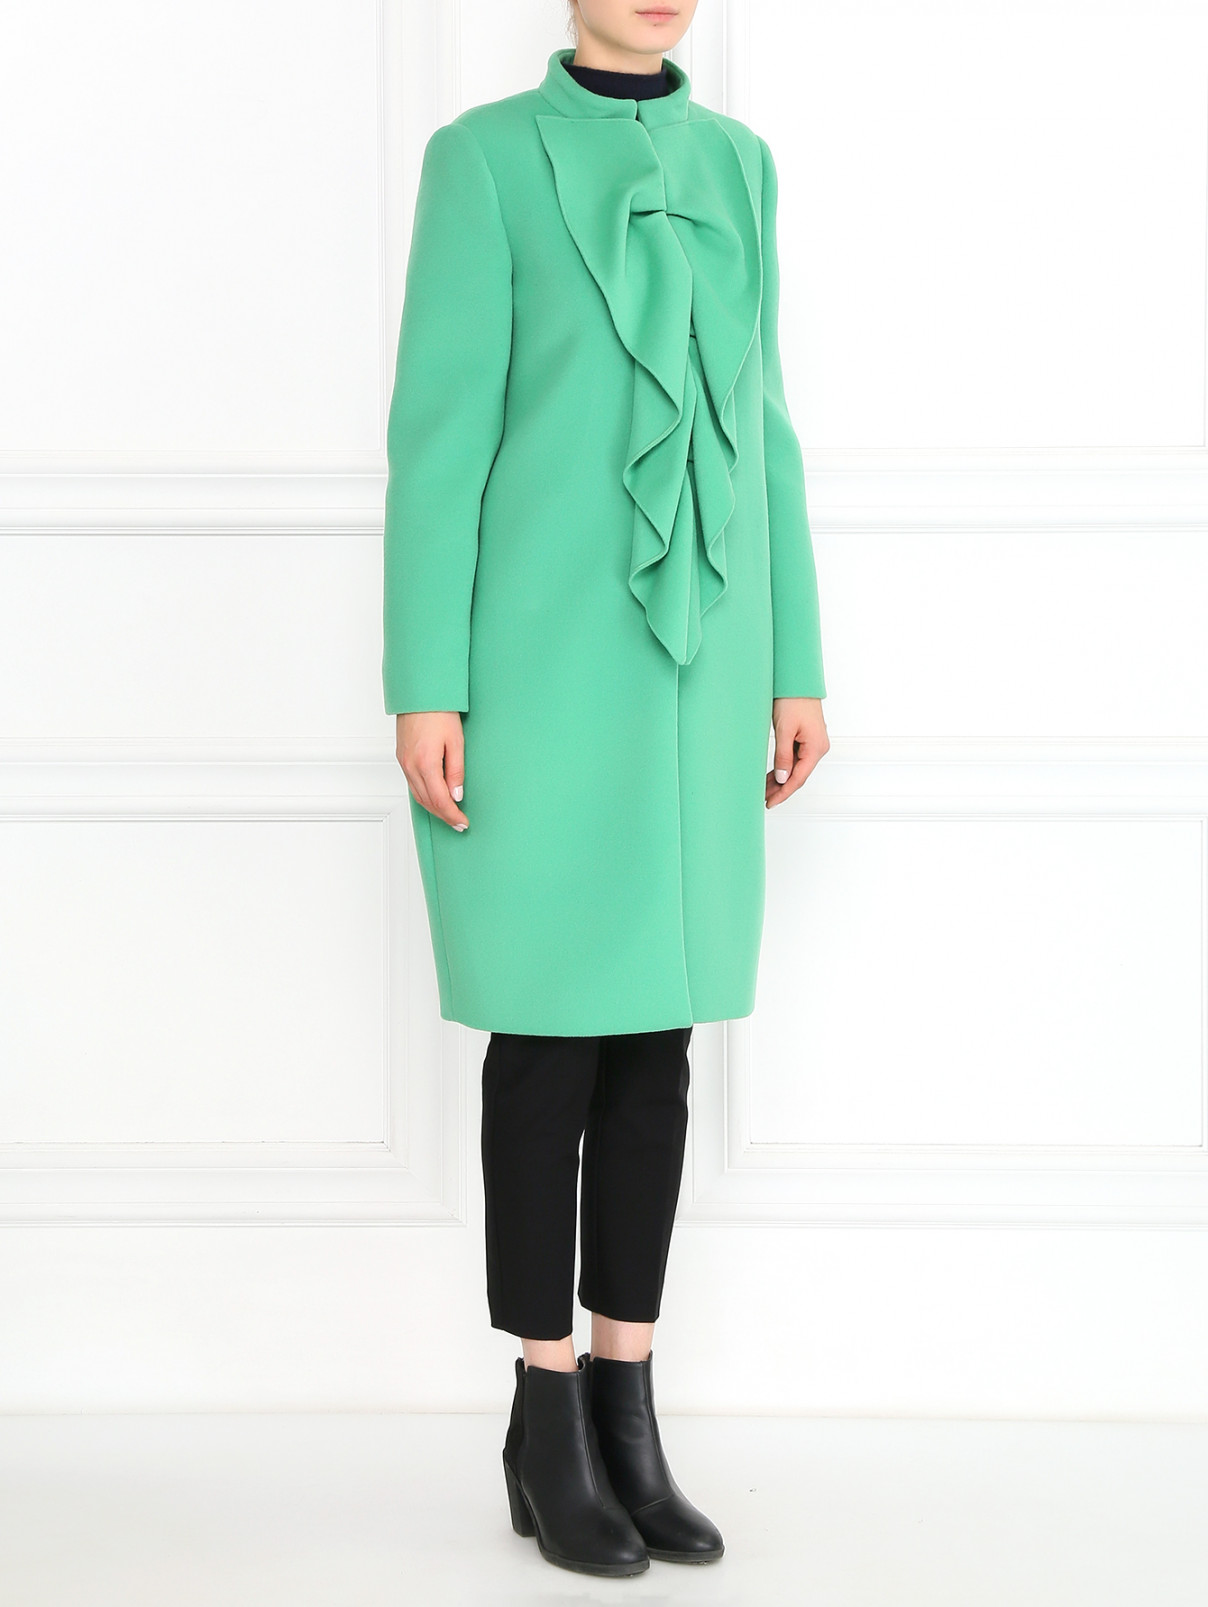 Пальто из шерсти и кашемира с декоративным воротником Moschino Boutique  –  Модель Общий вид  – Цвет:  Зеленый